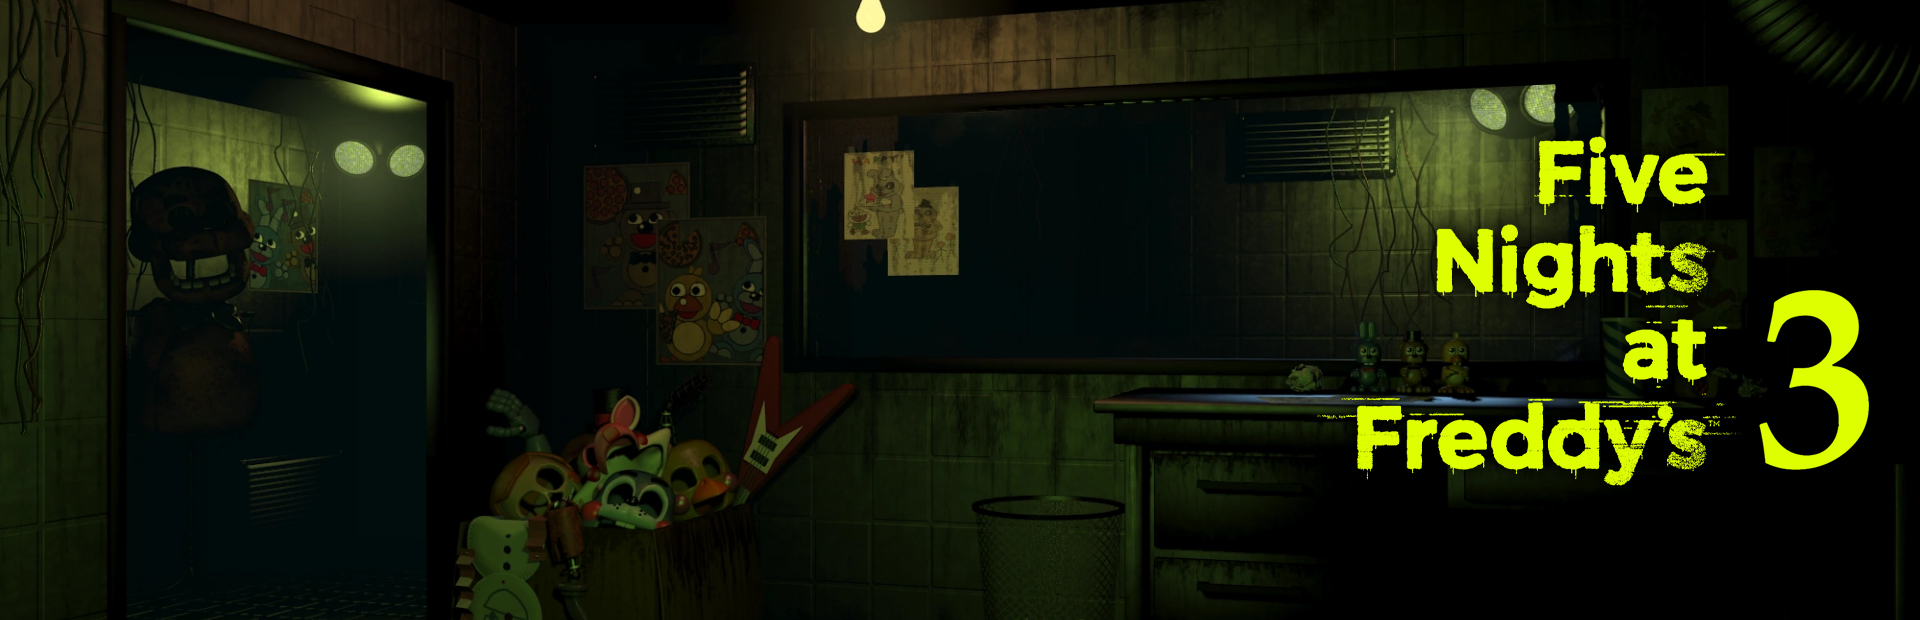 دانلود بازی Five Nights at Freddy's 3 برای PC | گیمباتو